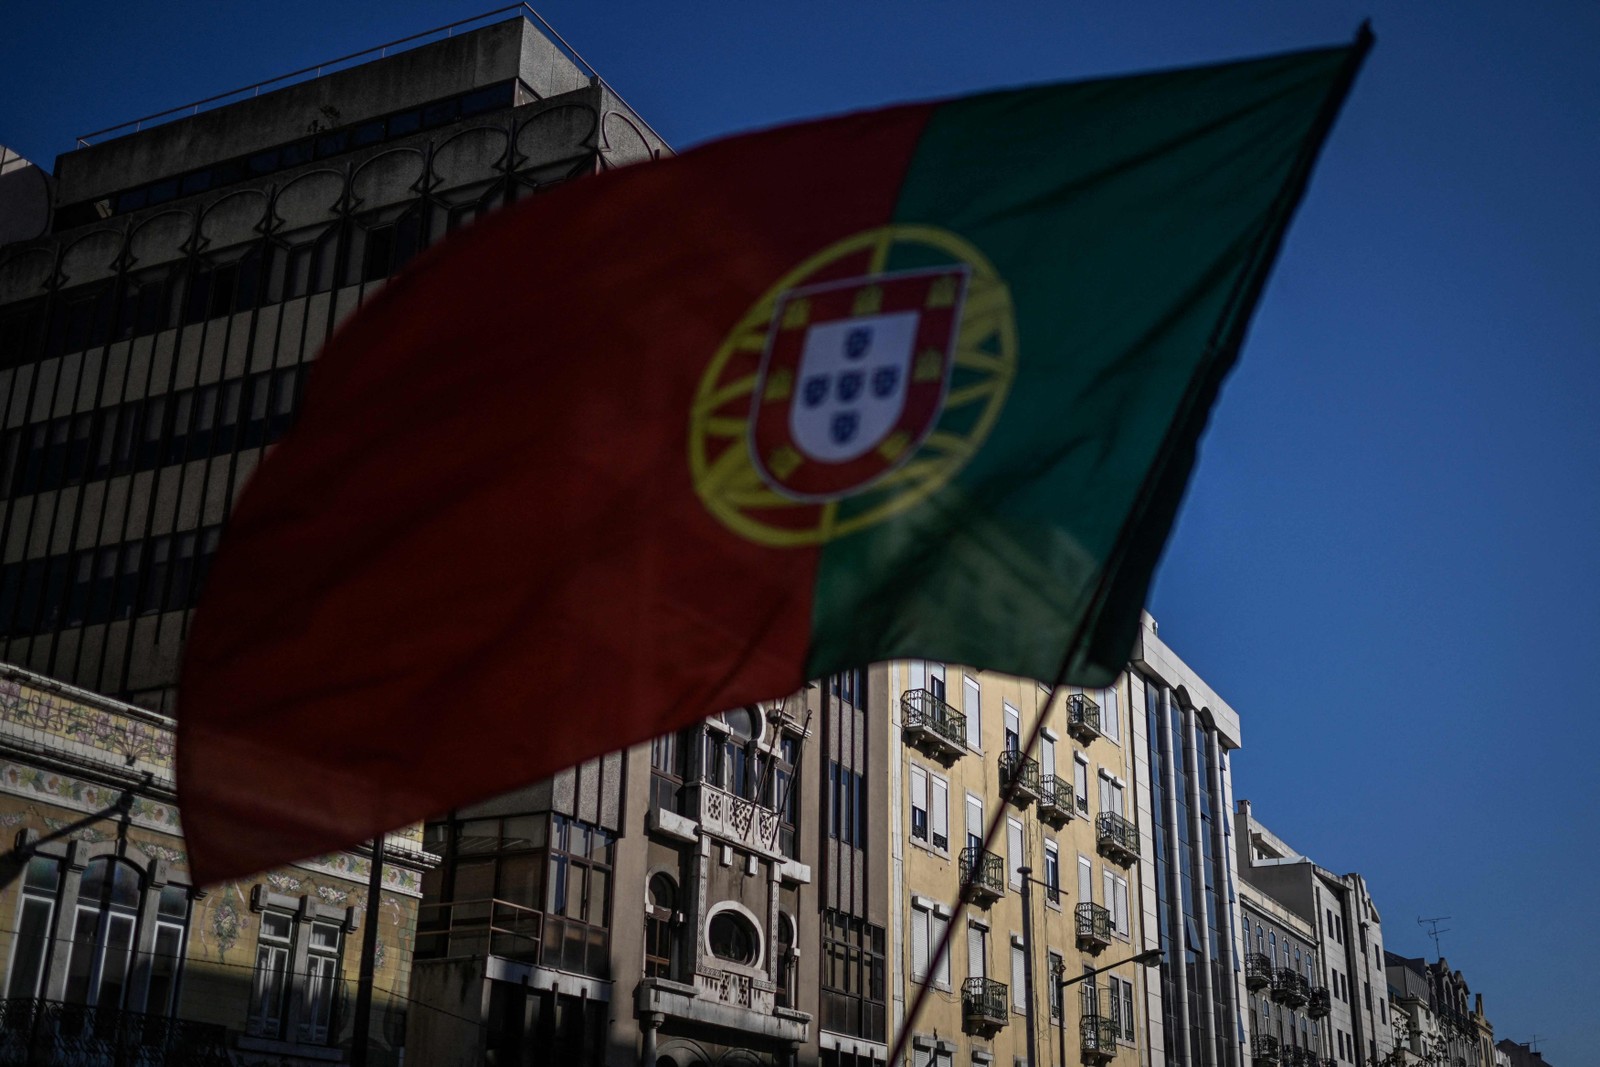 Manifestação em Lisboa por . Portugueses realizam ato nas ruas de lisboa por melhores condições de habitação e edidas de enfrentamento para a crise habitacional. — Foto: Patricia DE MELO MOREIRA / AFP